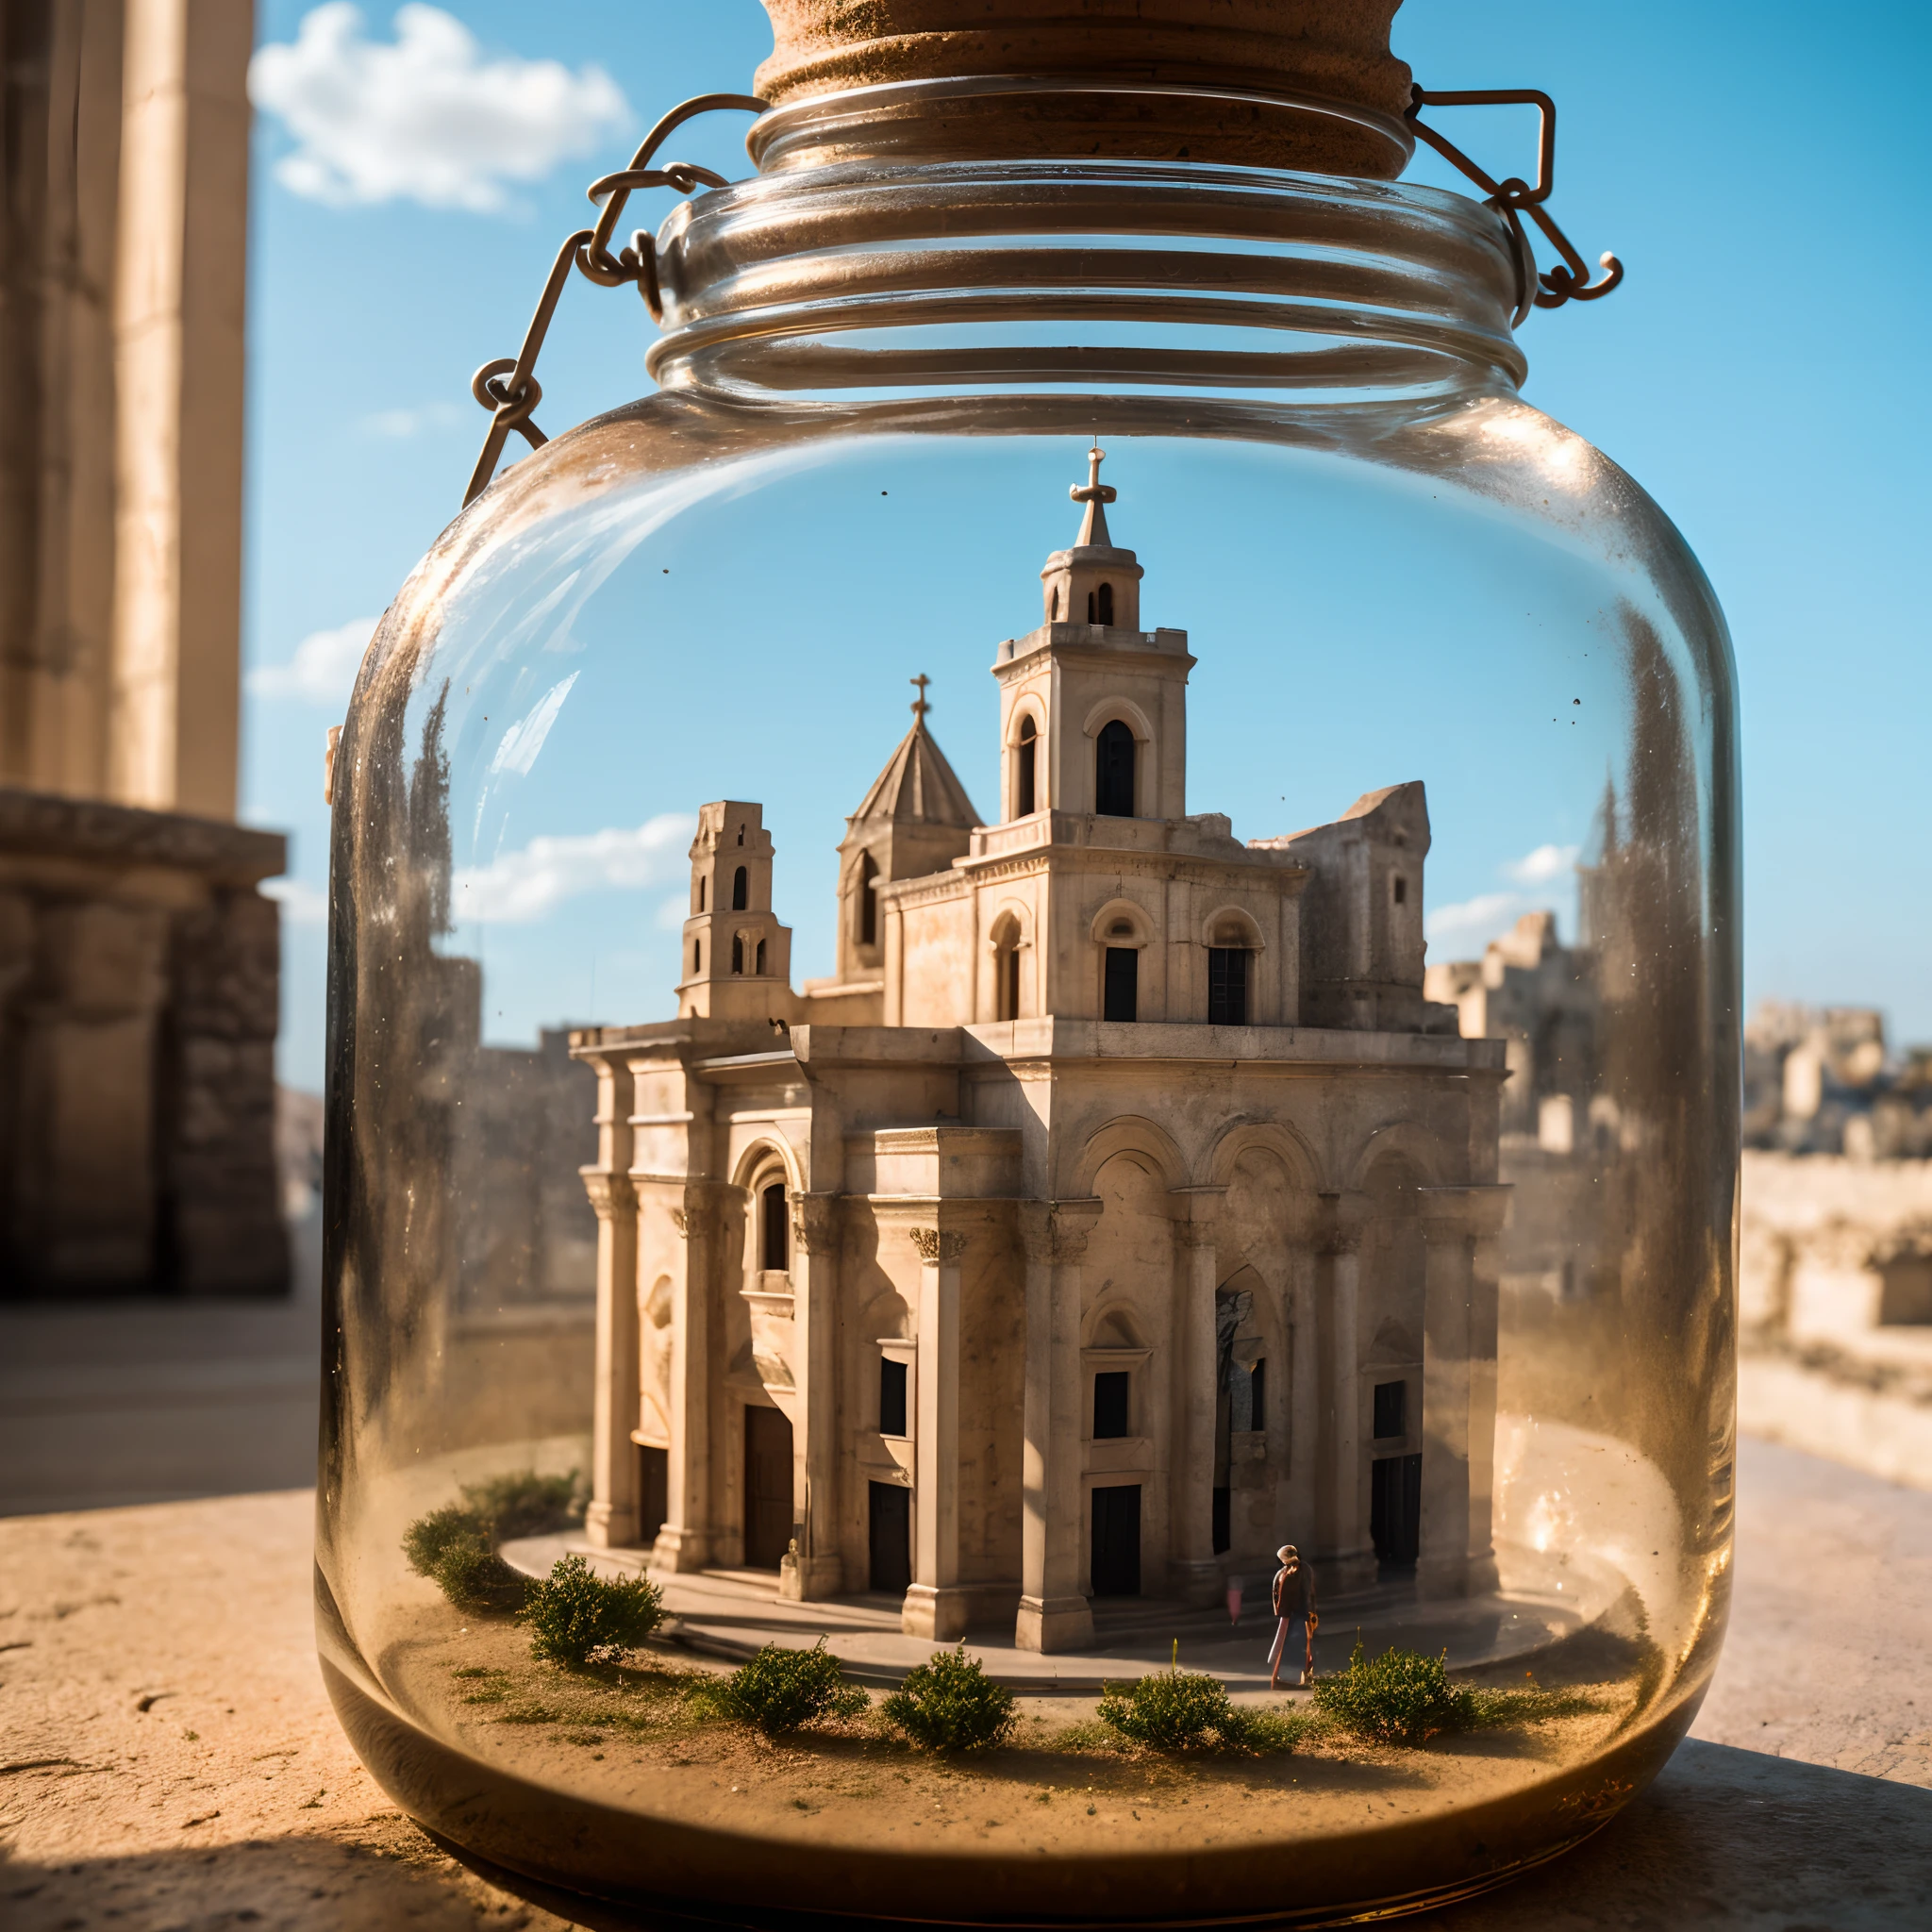 Catedral de Matera com torre sineira dentro de um frasco de vidro quadrado com tampa, colocação no peitoril da janela, extremamente detalhado, 8K, estilo punk apocalíptico, Miniaturas, fotografia macro em close-up